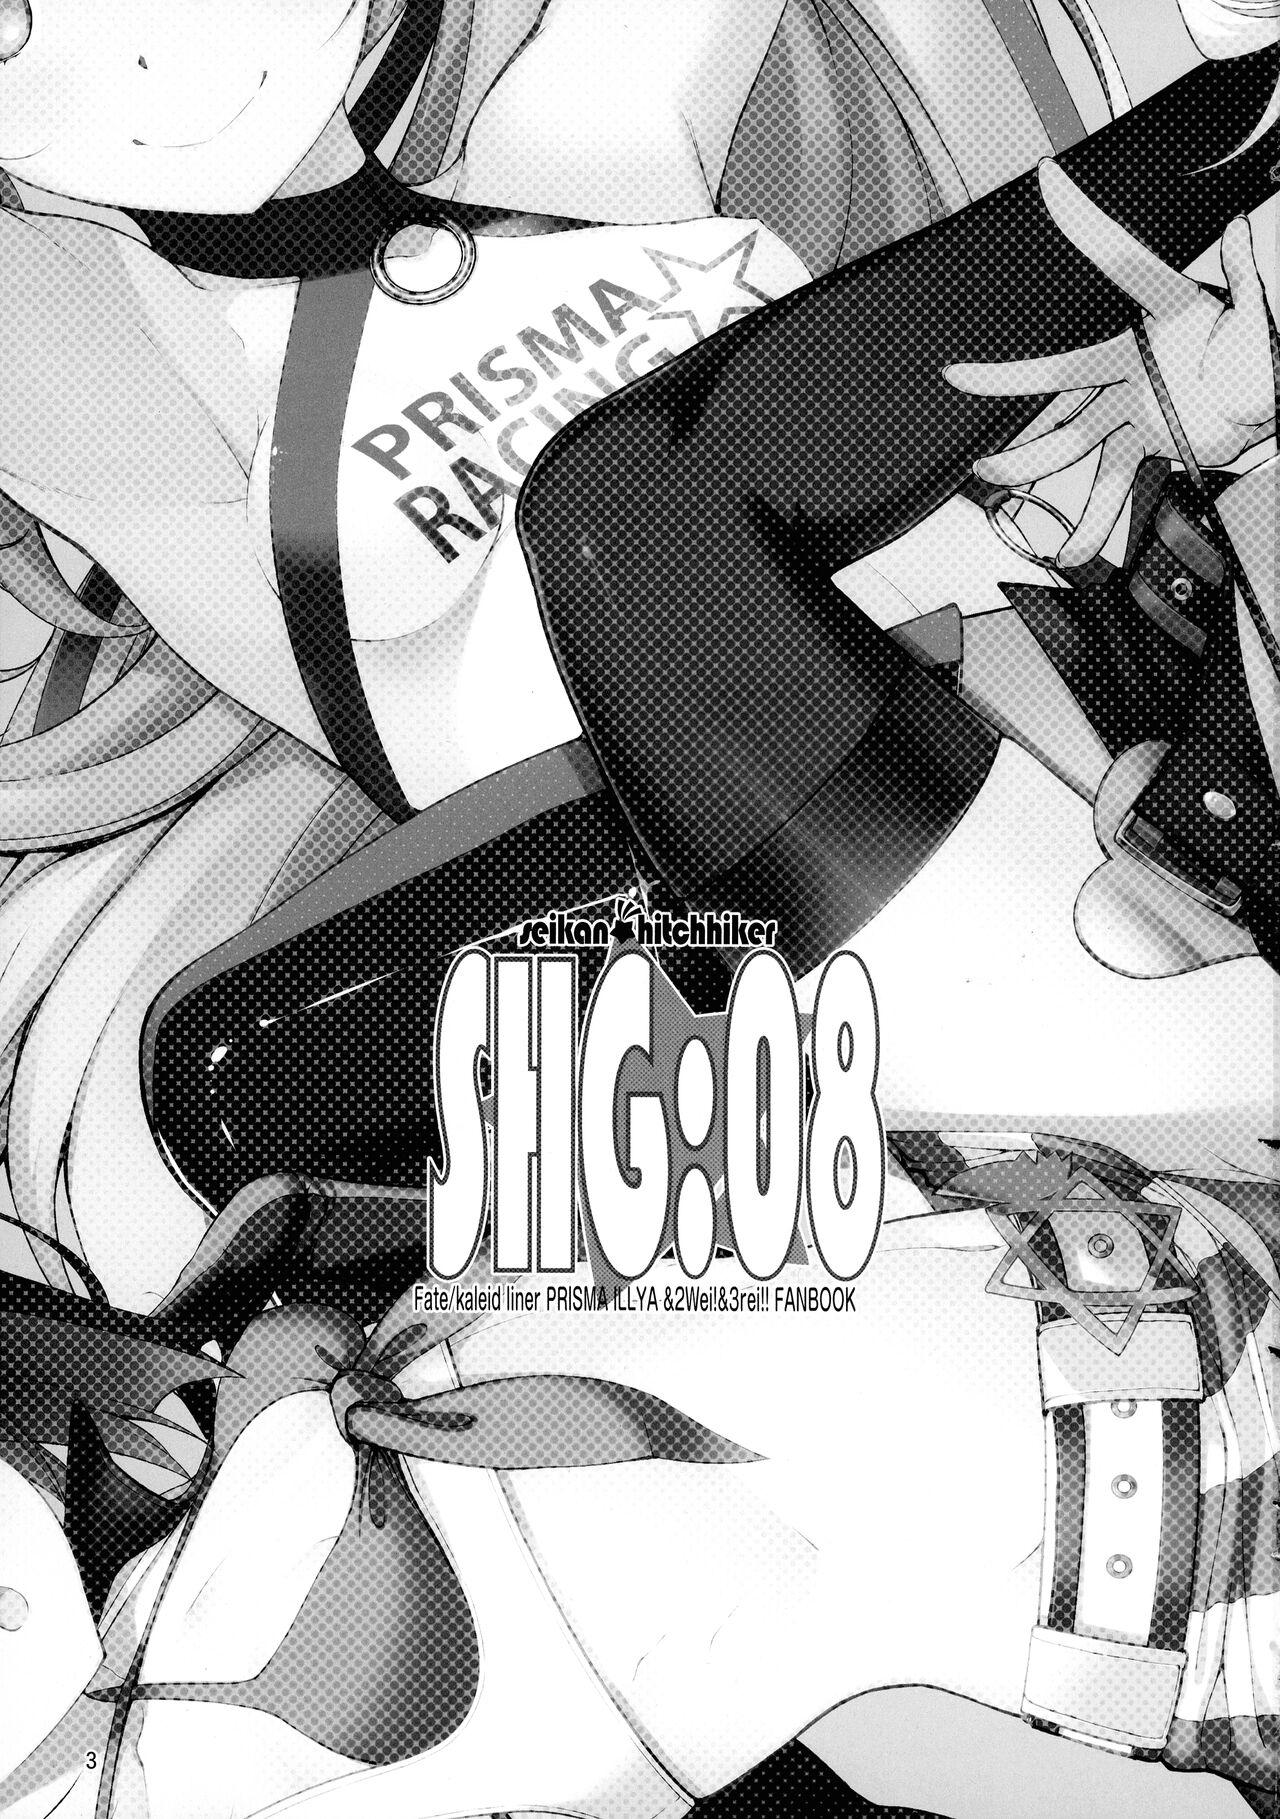 Argenta SHG:08 - Fate kaleid liner prisma illya Outdoor - Page 2